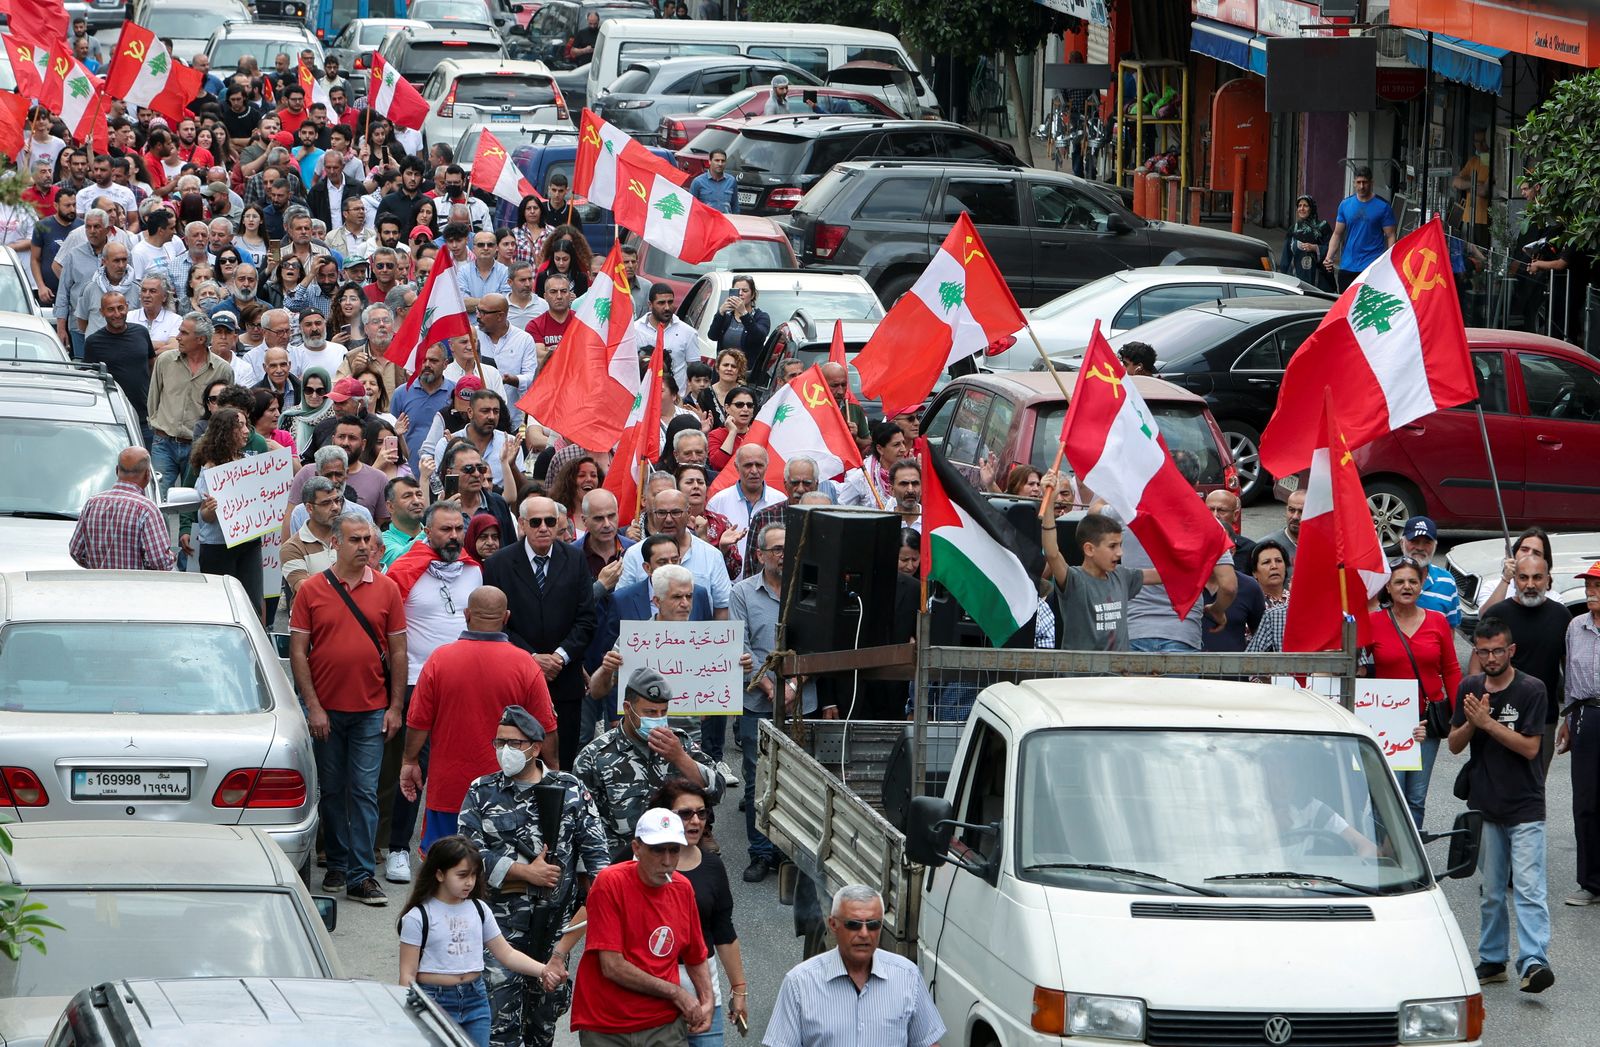 أشخاص يرفعون الأعلام واللافتات أثناء مسيرة خلال مظاهرة للاحتفال بعيد العمال في مدينة النبطية جنوبي لبنان. 1 مايو 2022 - REUTERS